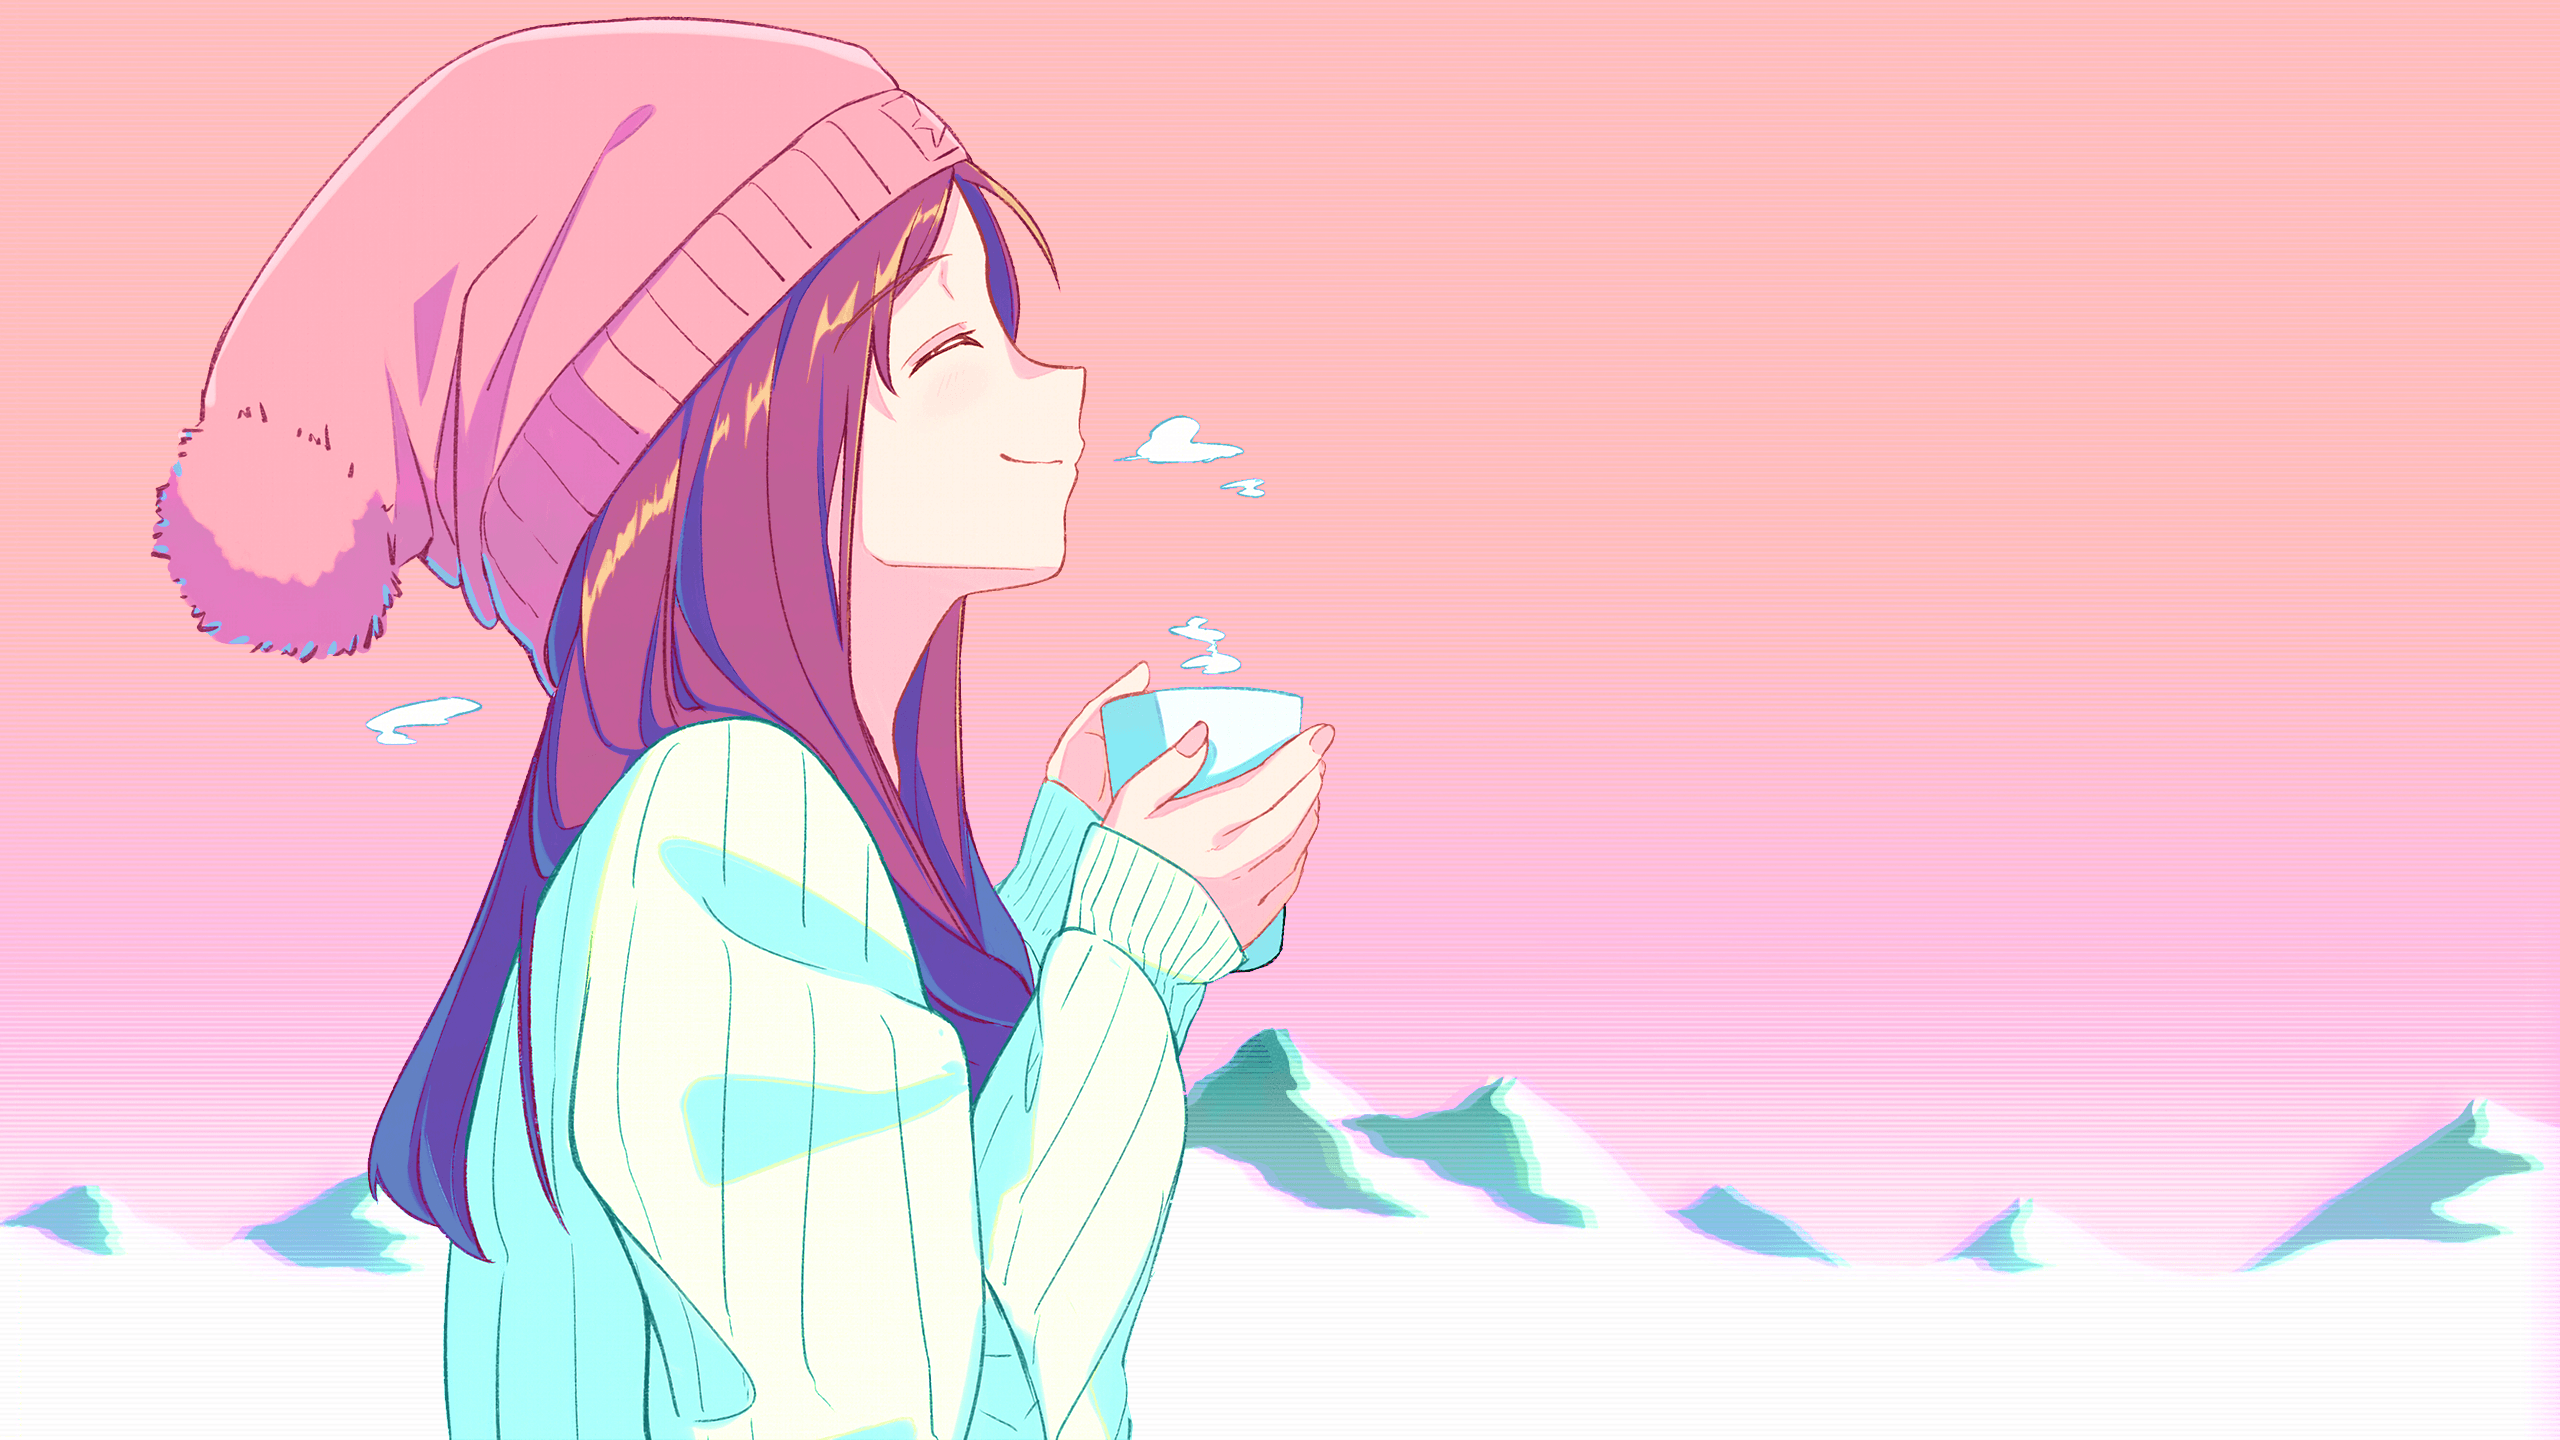 Tea girl [Original](2560x1440)